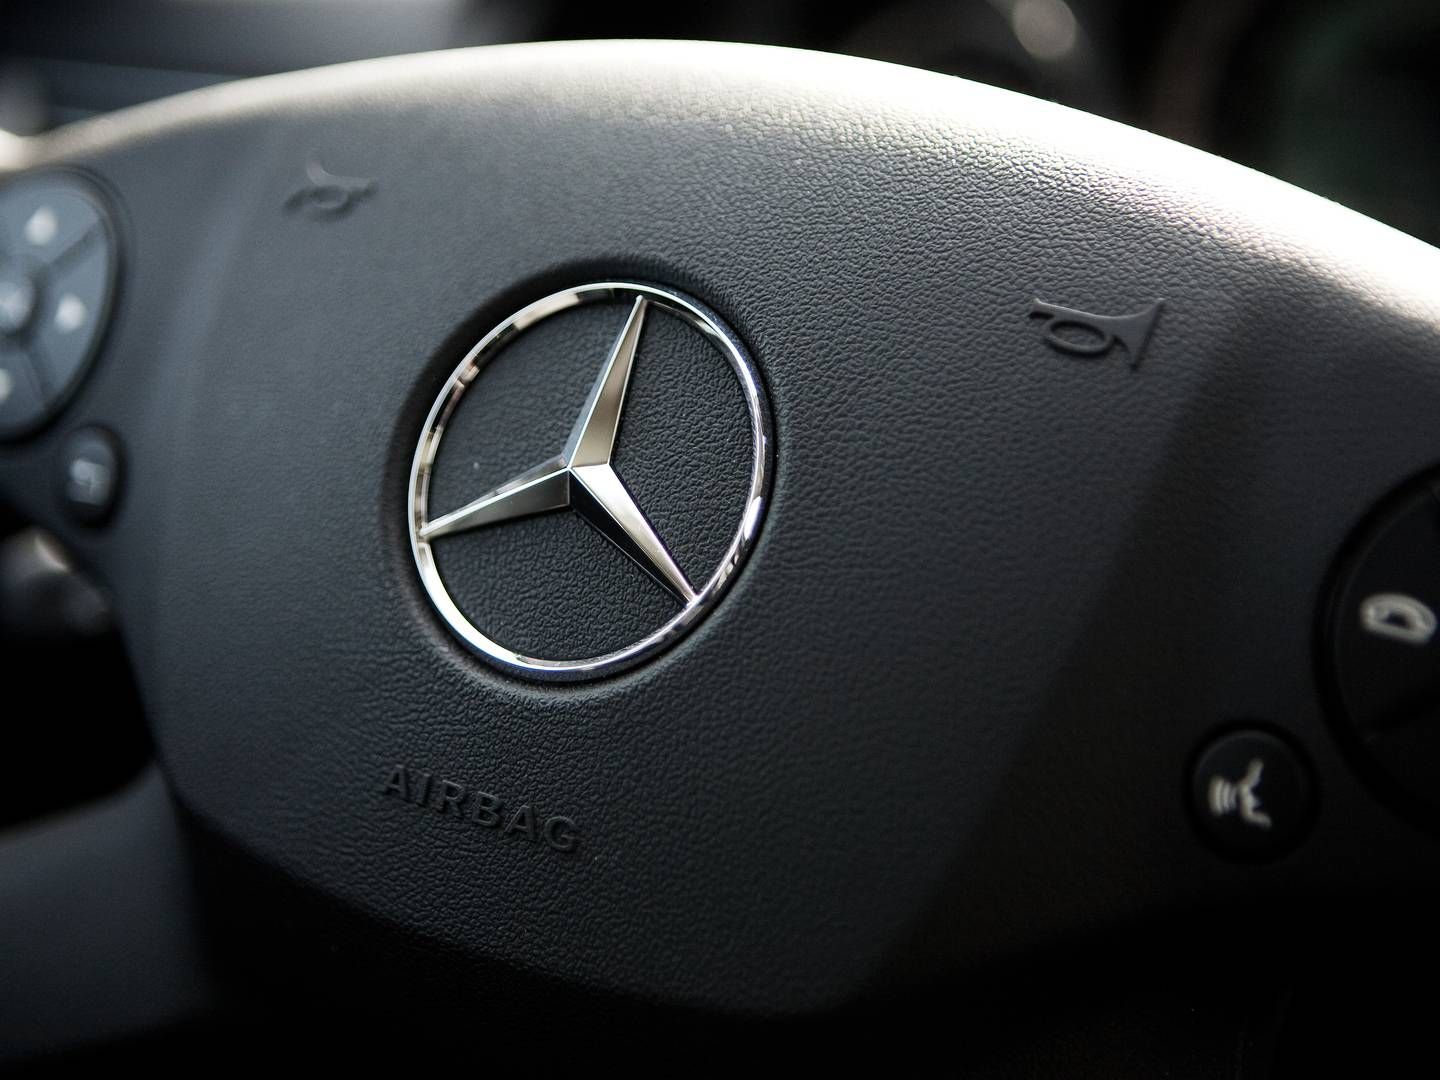 Mercedes-Benz har over for blandt andre DR overordnet afvist kritikken. | Foto: Martin Lehmann/Politiken